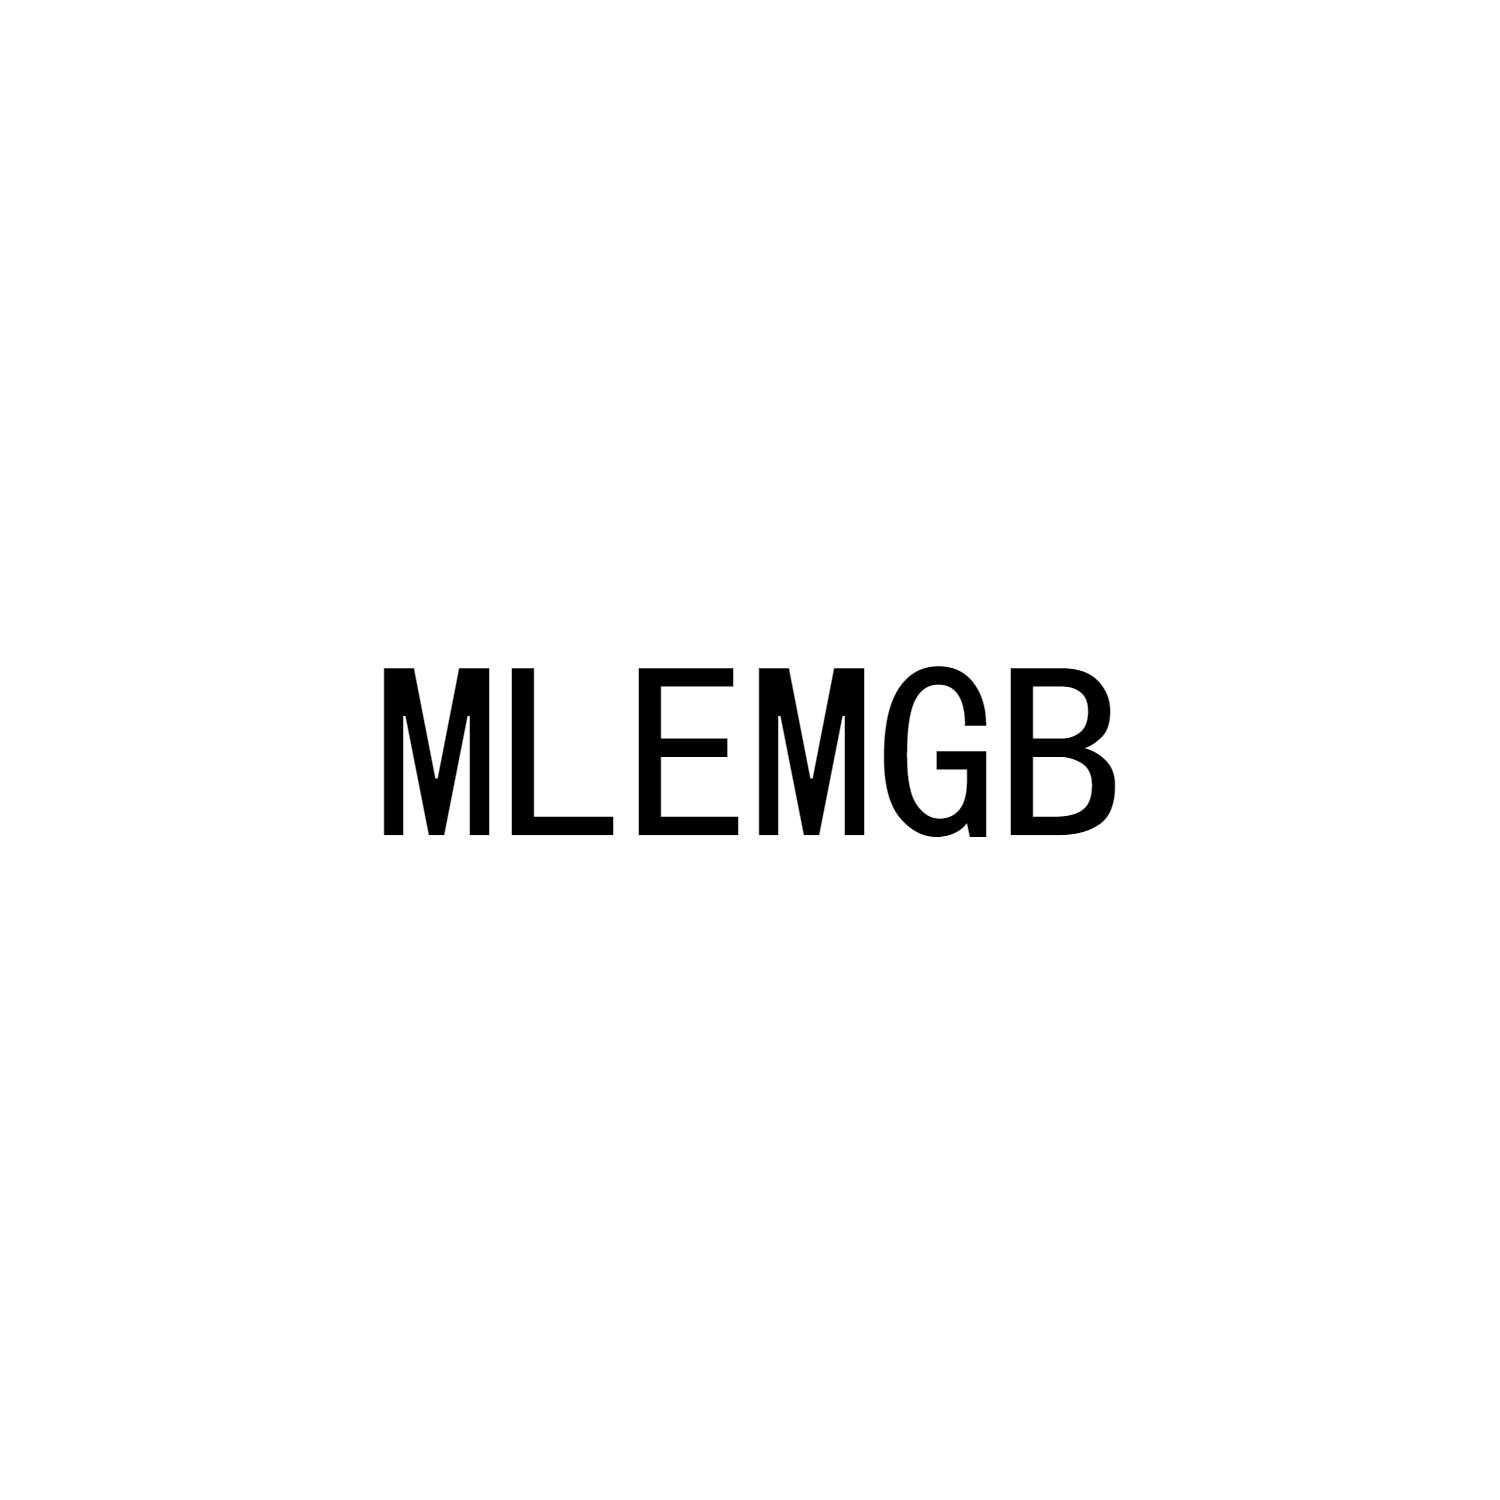 07类-机械设备MLEMGB商标转让